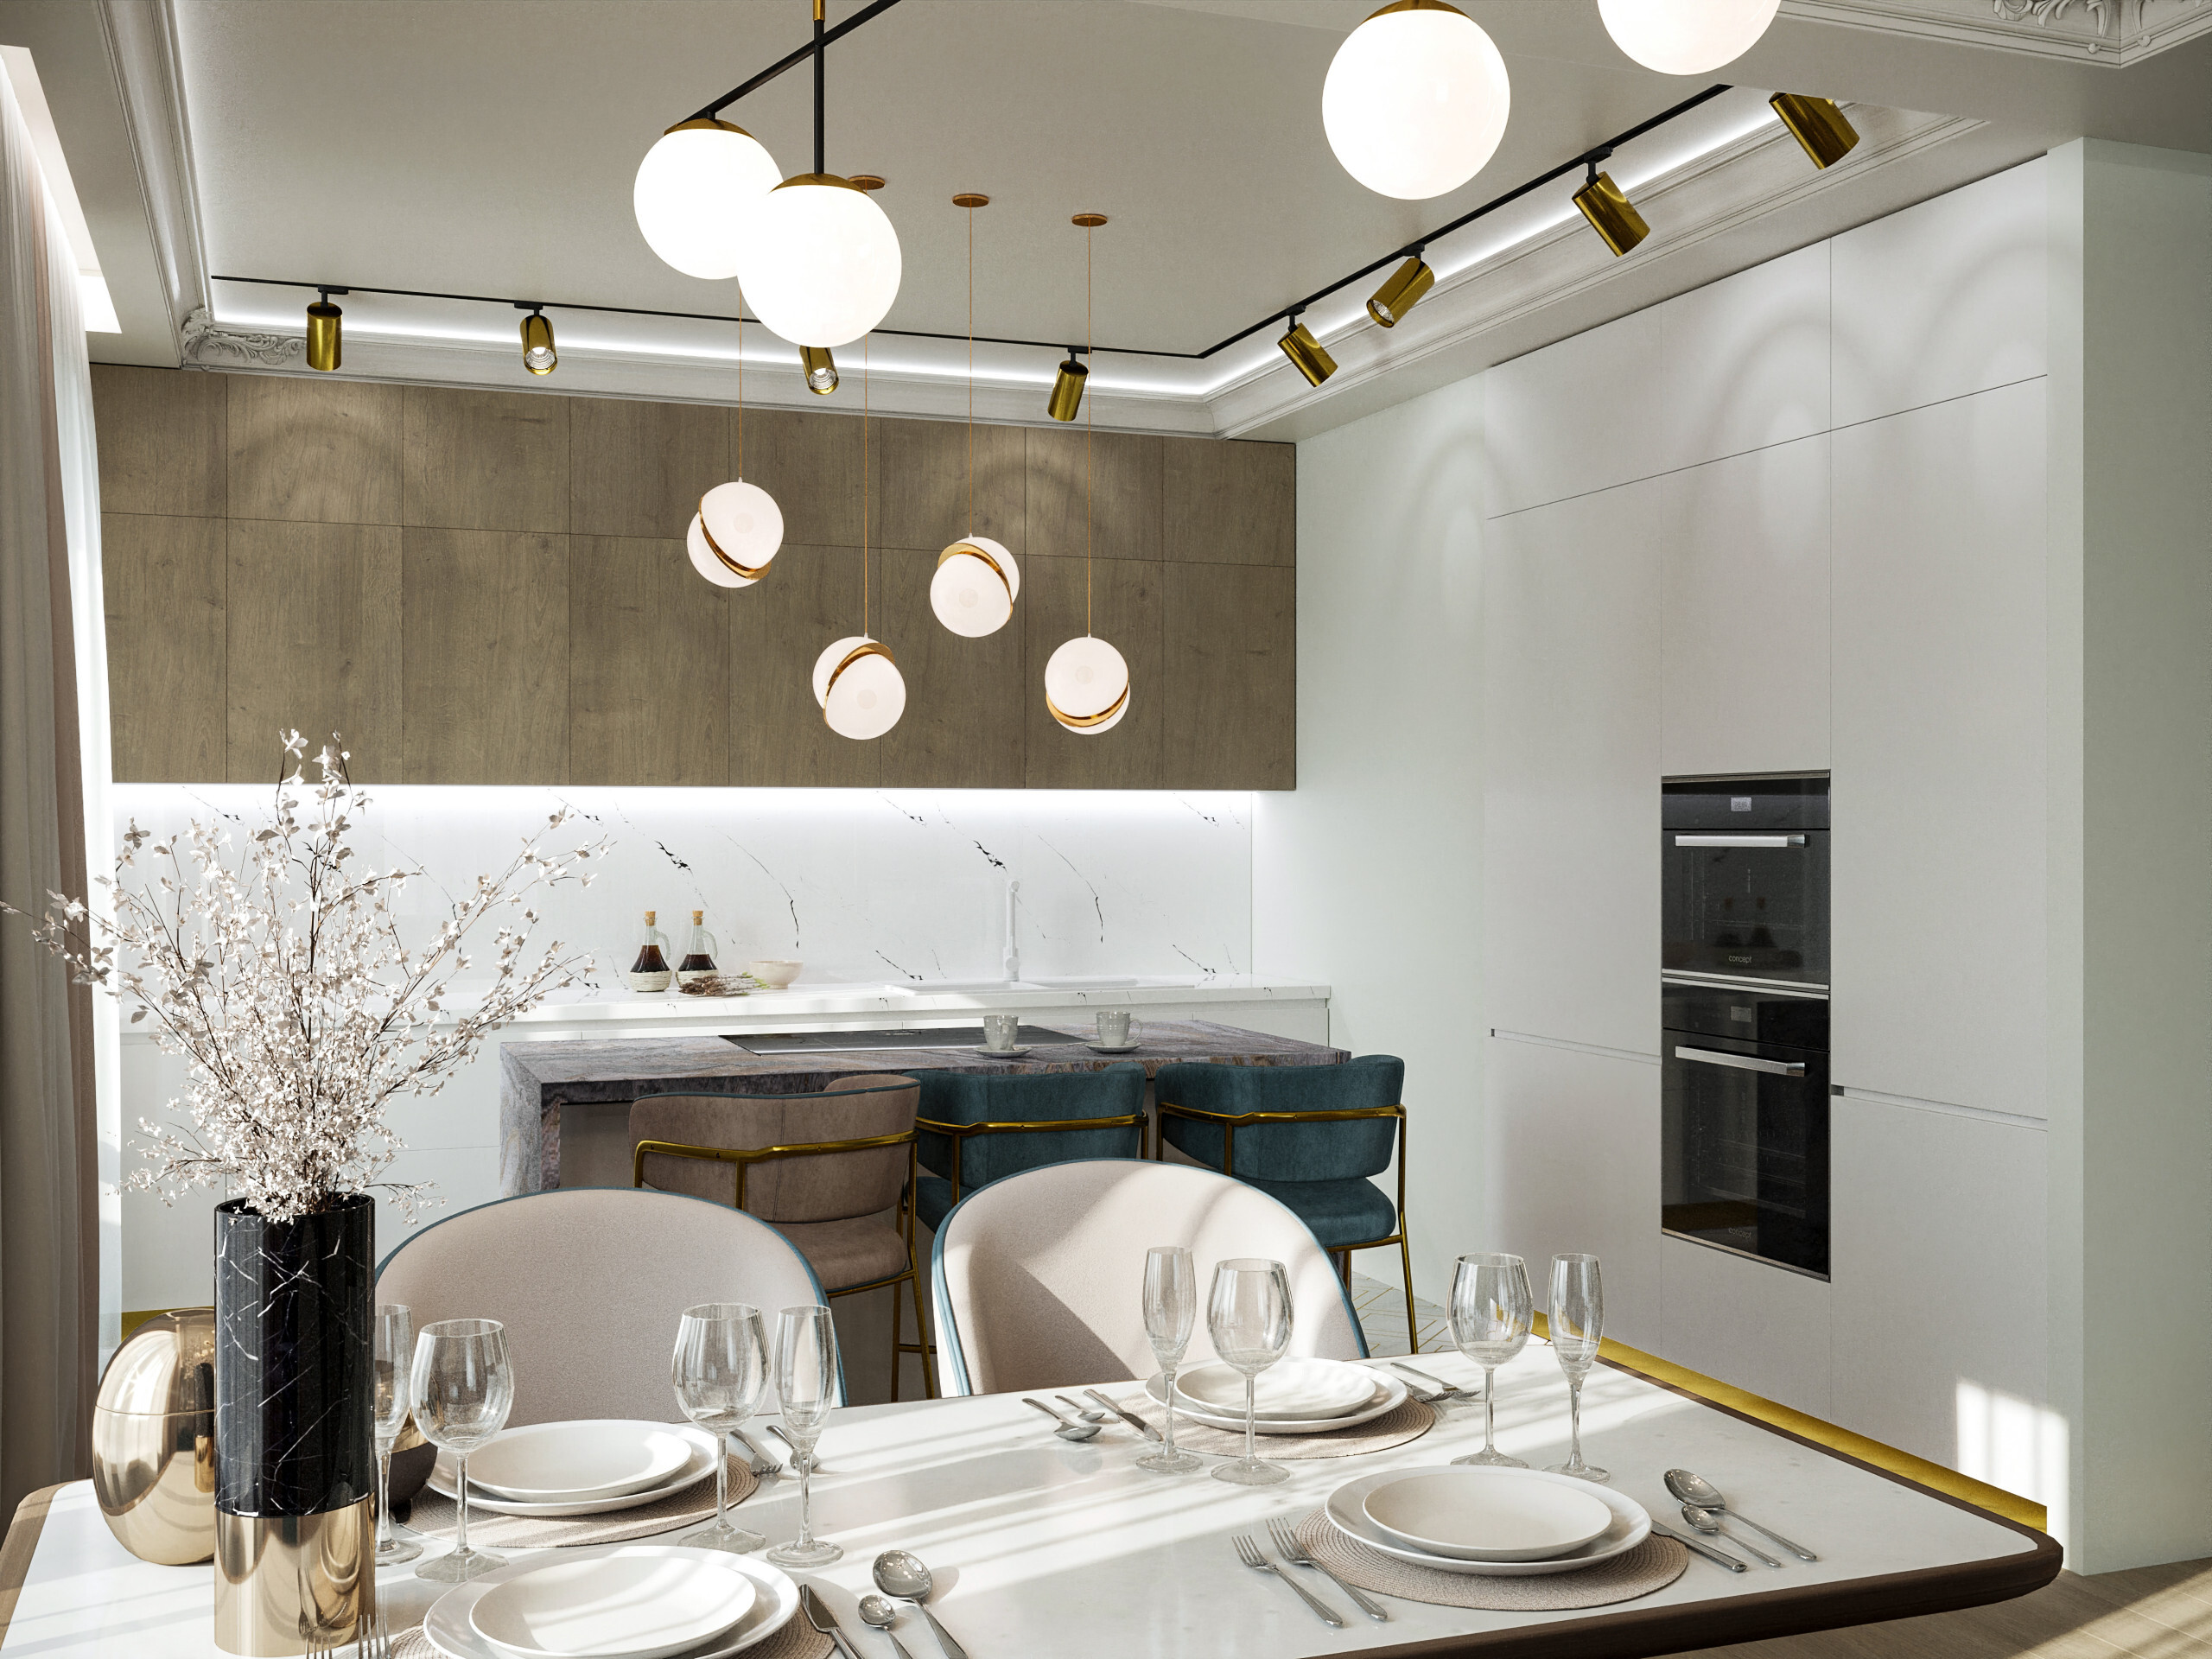 Интерьер кухни cветильниками над столом и подсветкой светодиодной в неоклассике